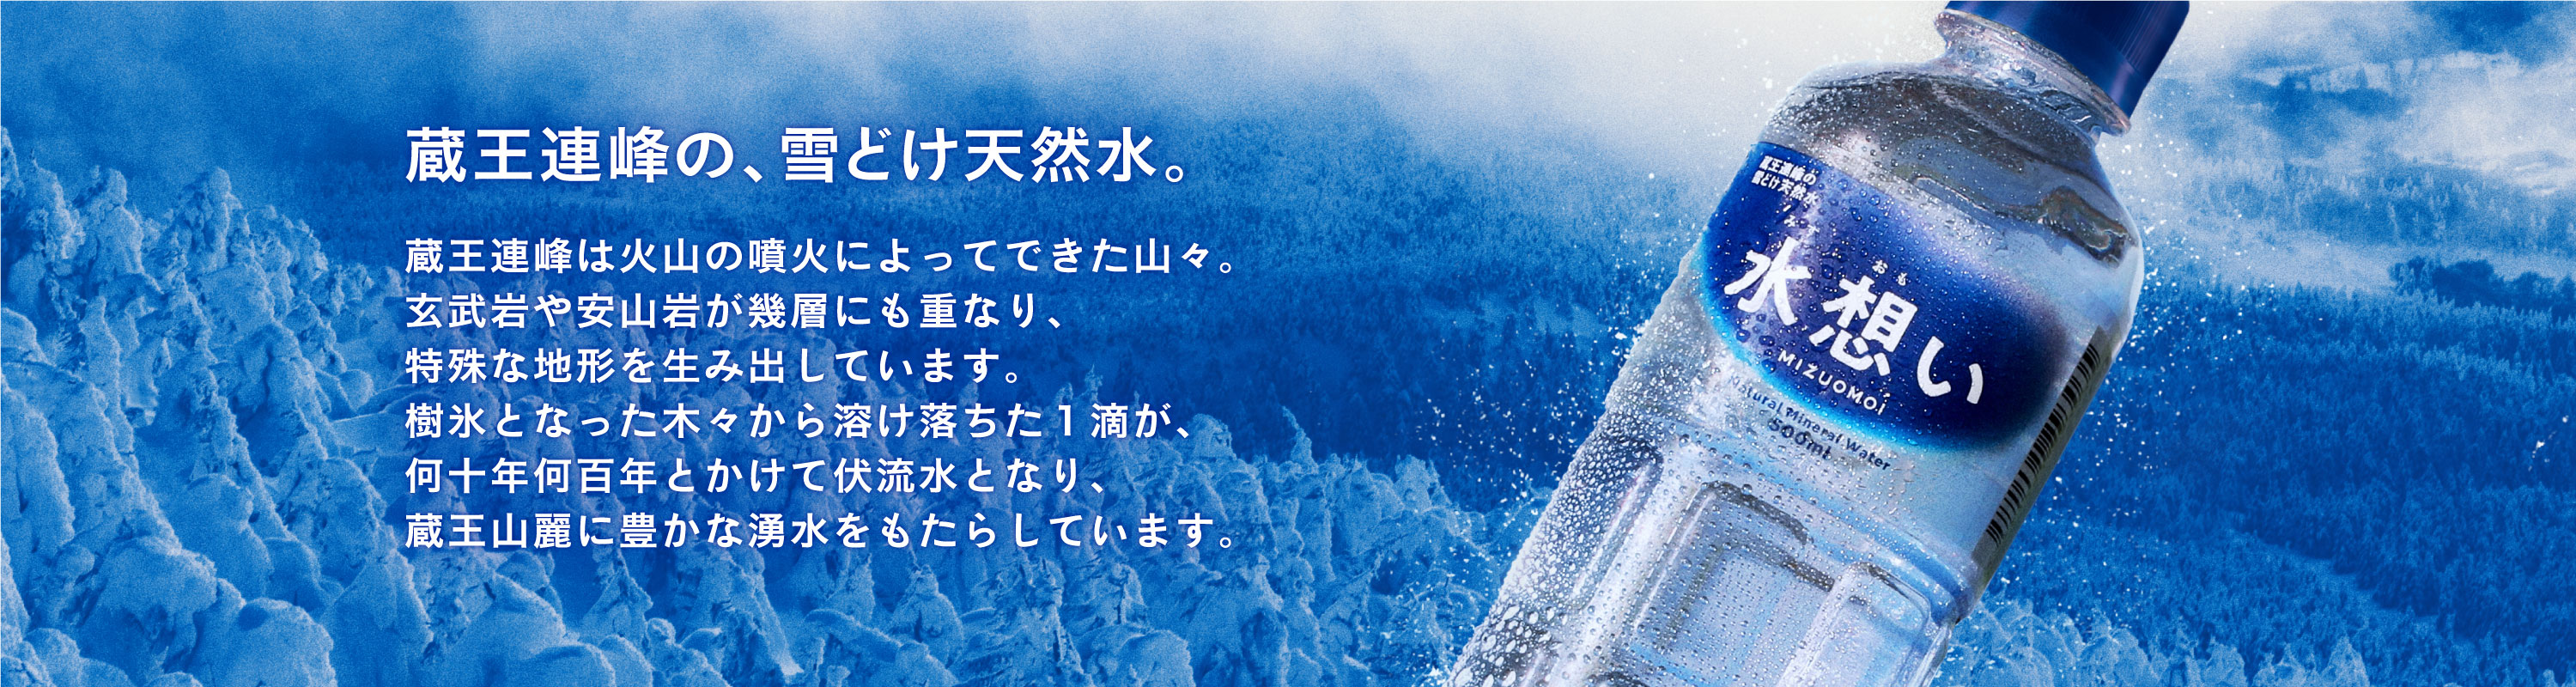 「蔵王連峰の、雪どけ天然水」商品ページはこちら